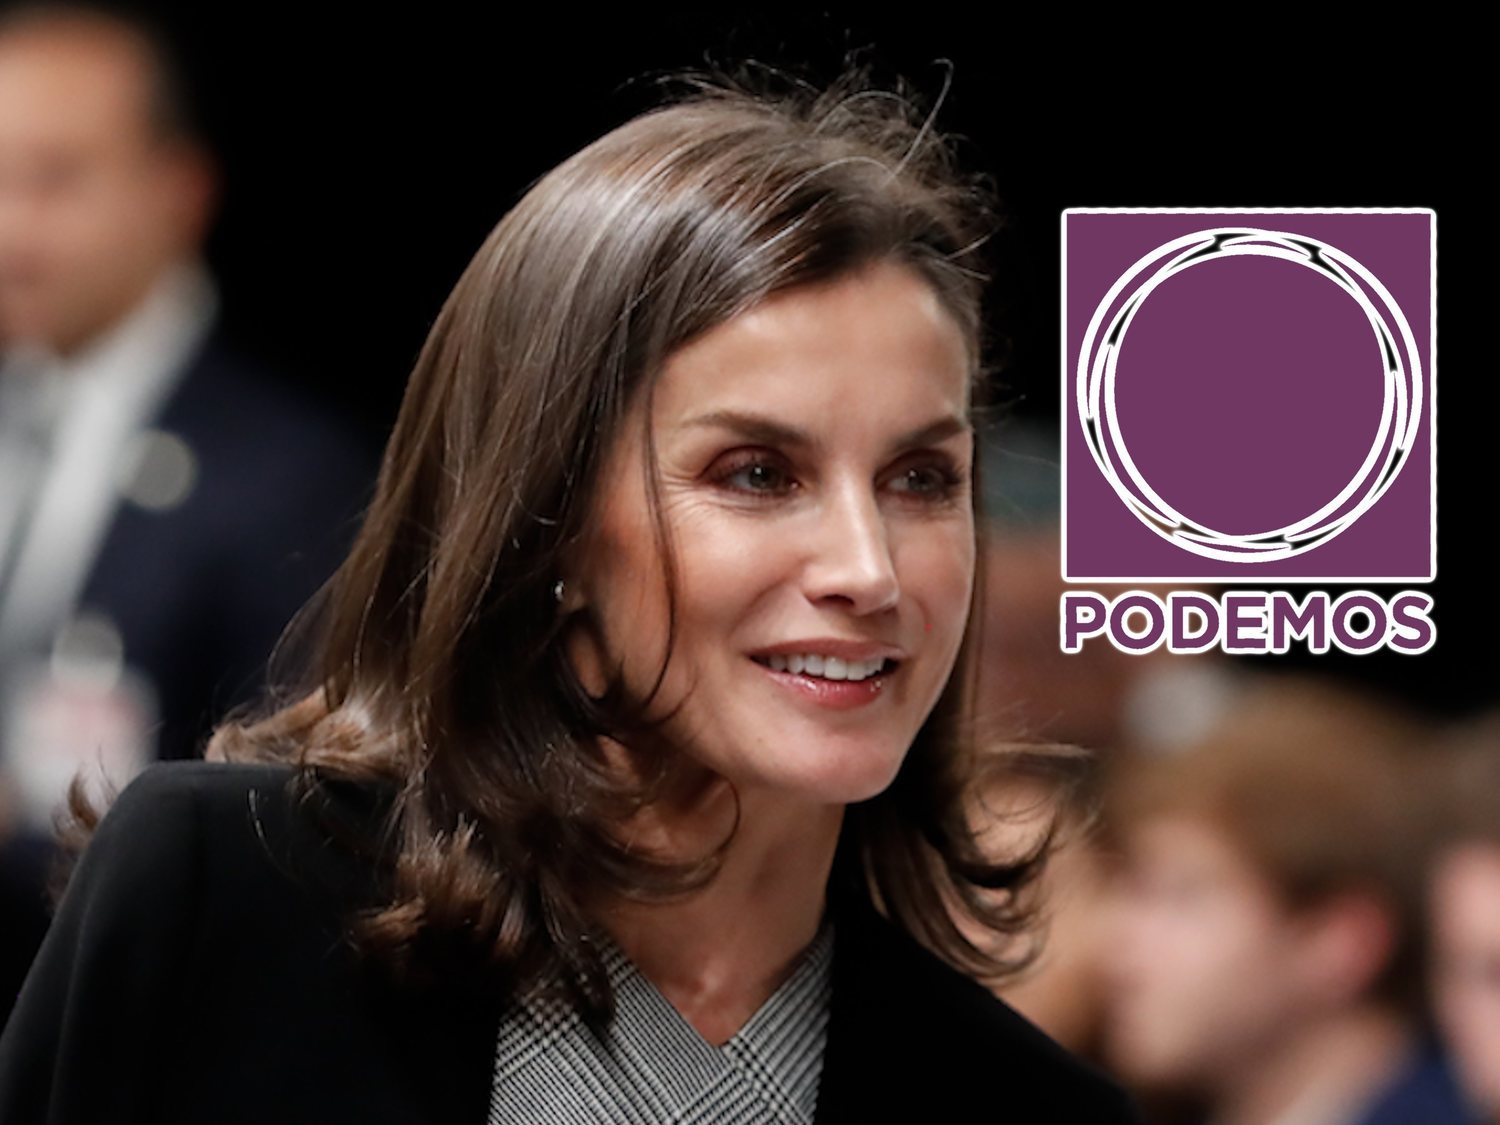 La reina Letizia, la única de la Familia Real que aprueba entre los votantes de Podemos